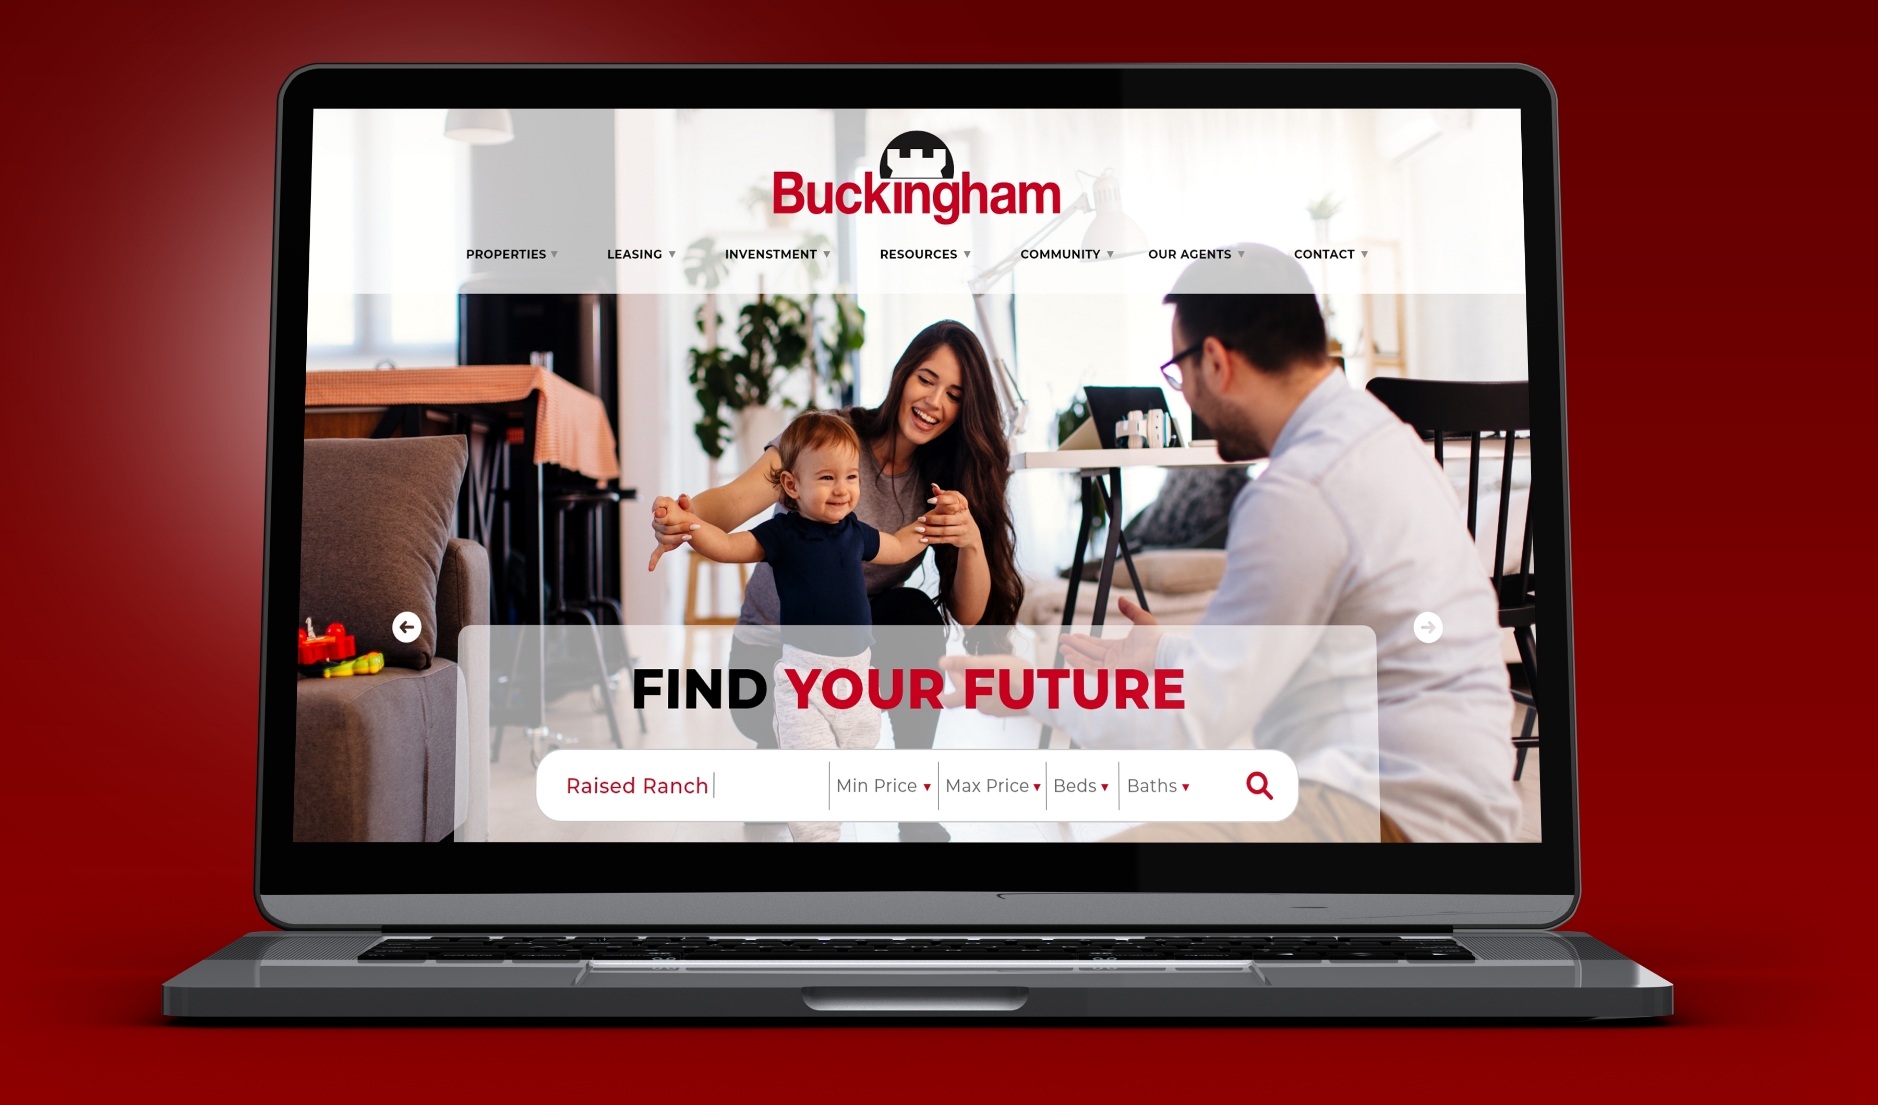 Buckingham Realty website shown on a laptop screen